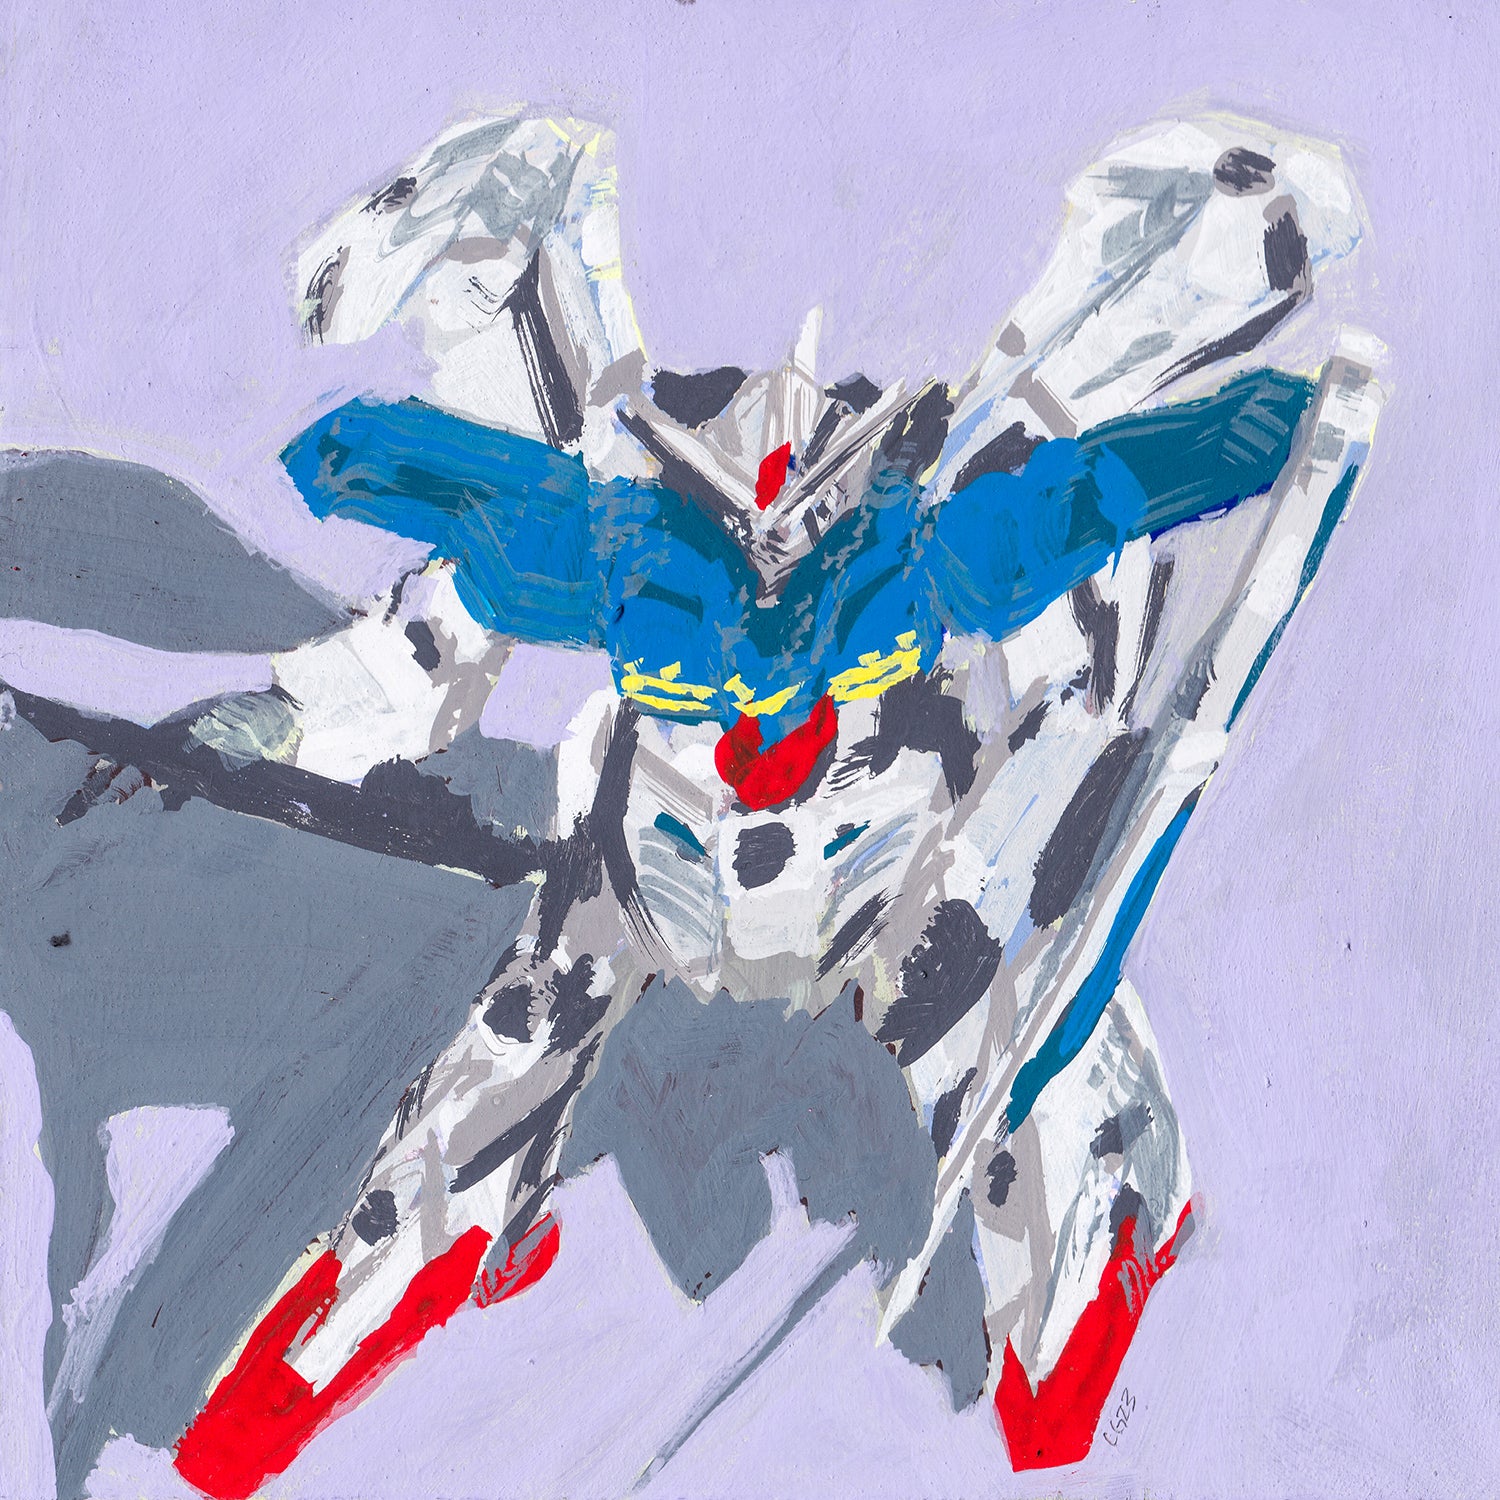 RX-78GP01-Fb Gundam "Zephyranthes" Full Burnern [a]